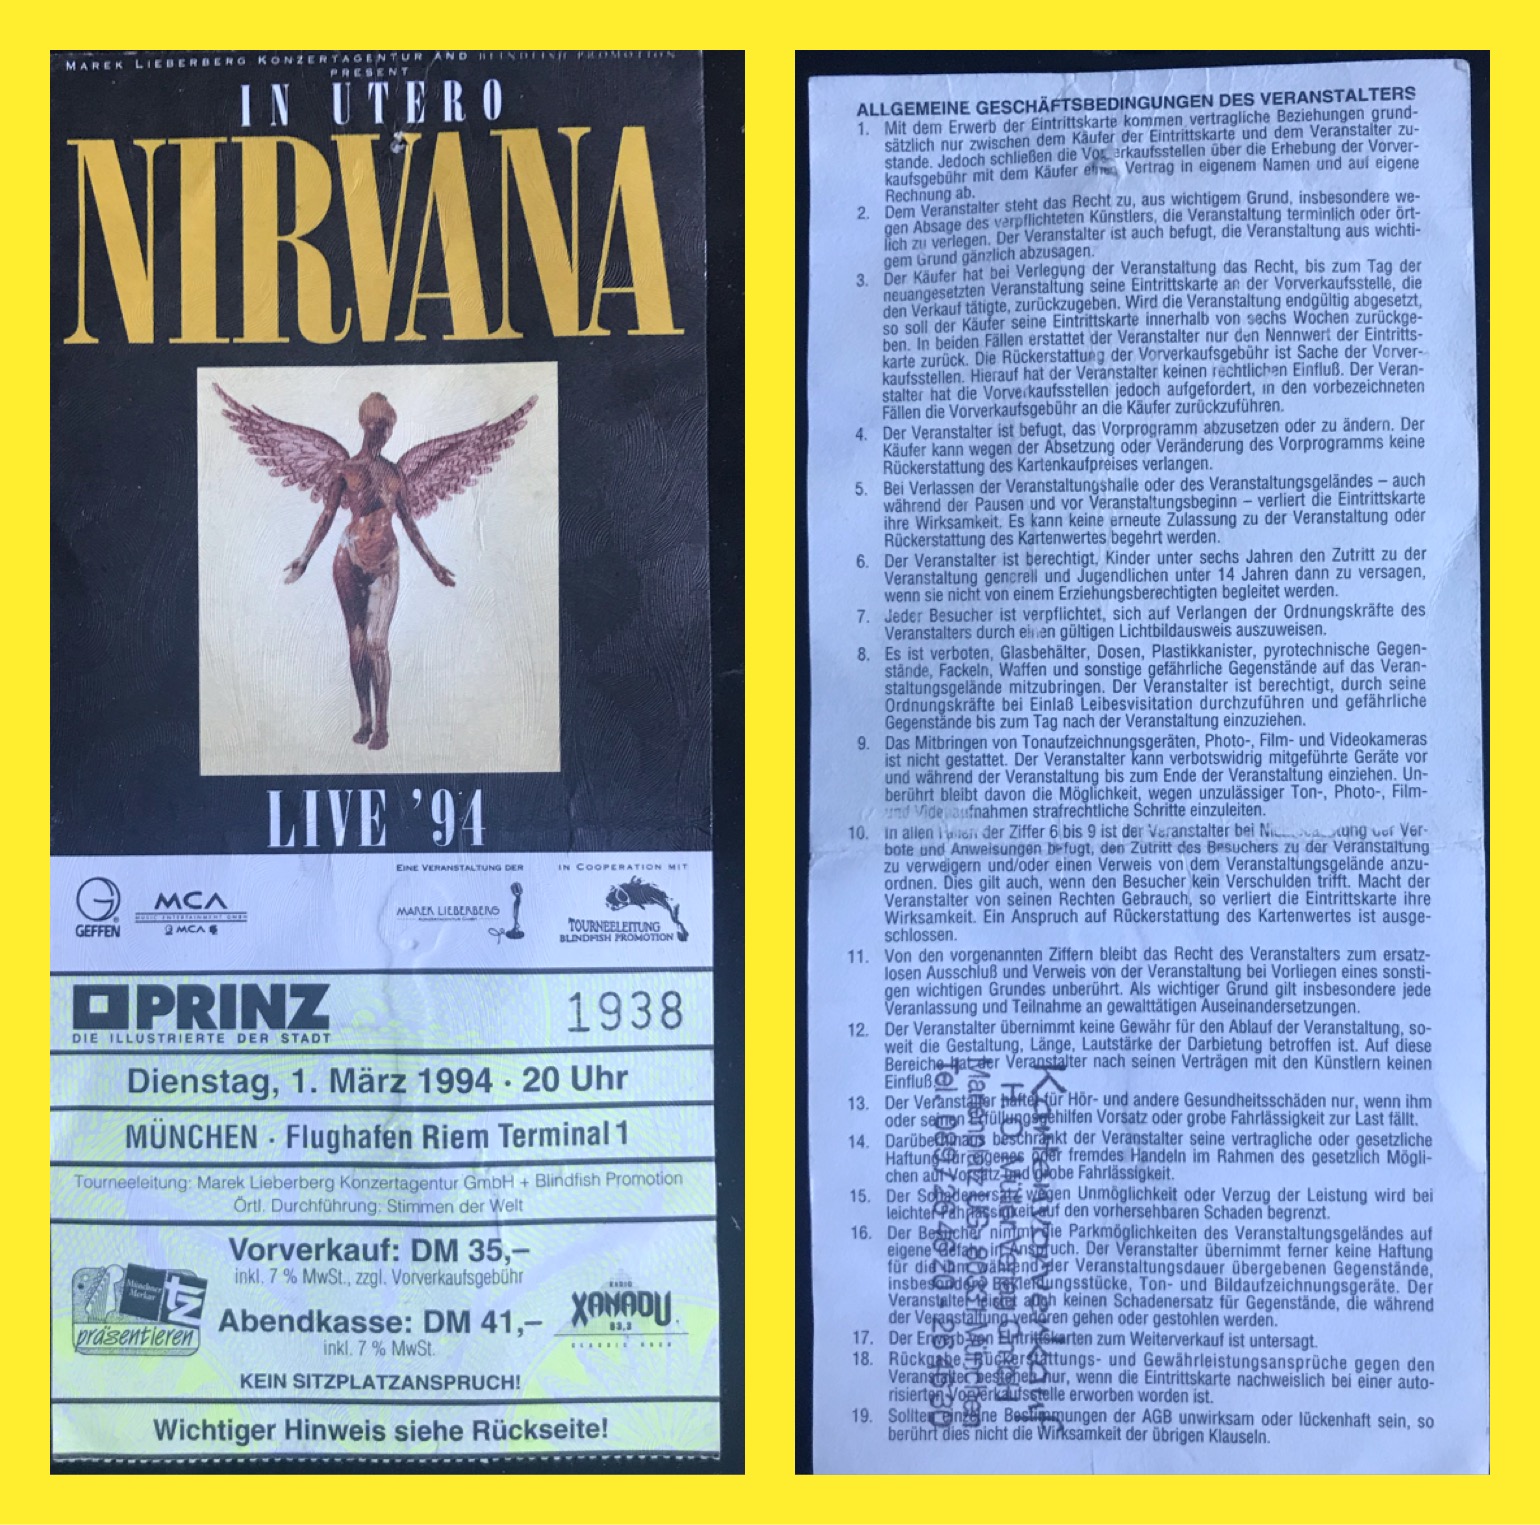 nirvana tour schedule